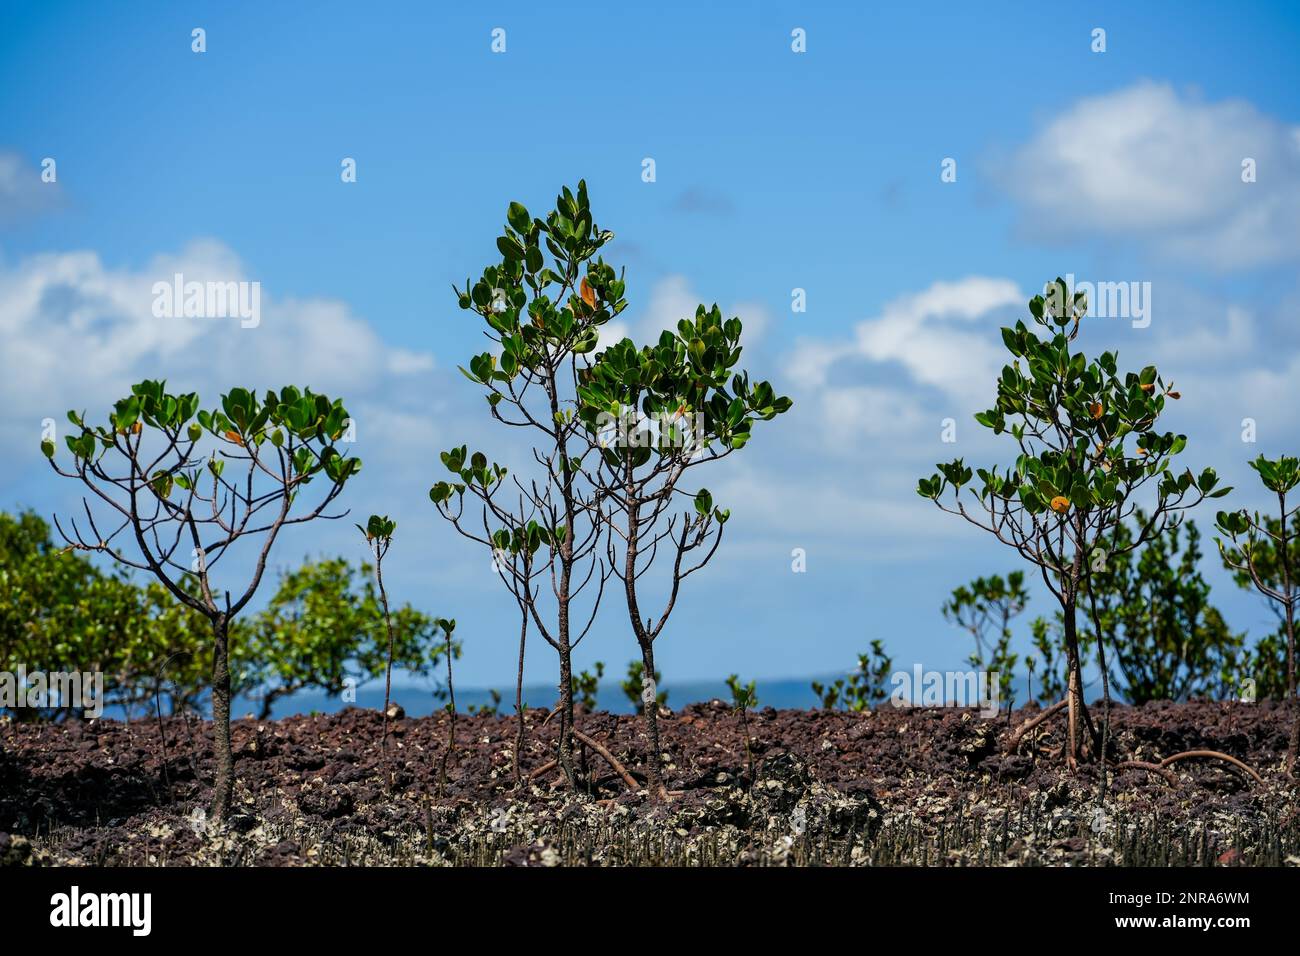 Blicken Sie durch junge Mangrovenbäume auf Coochiemudlo Island Tags, nach Stradbroke Island am Horizont und einen ziemlich bewölkten Himmel. Stockfoto